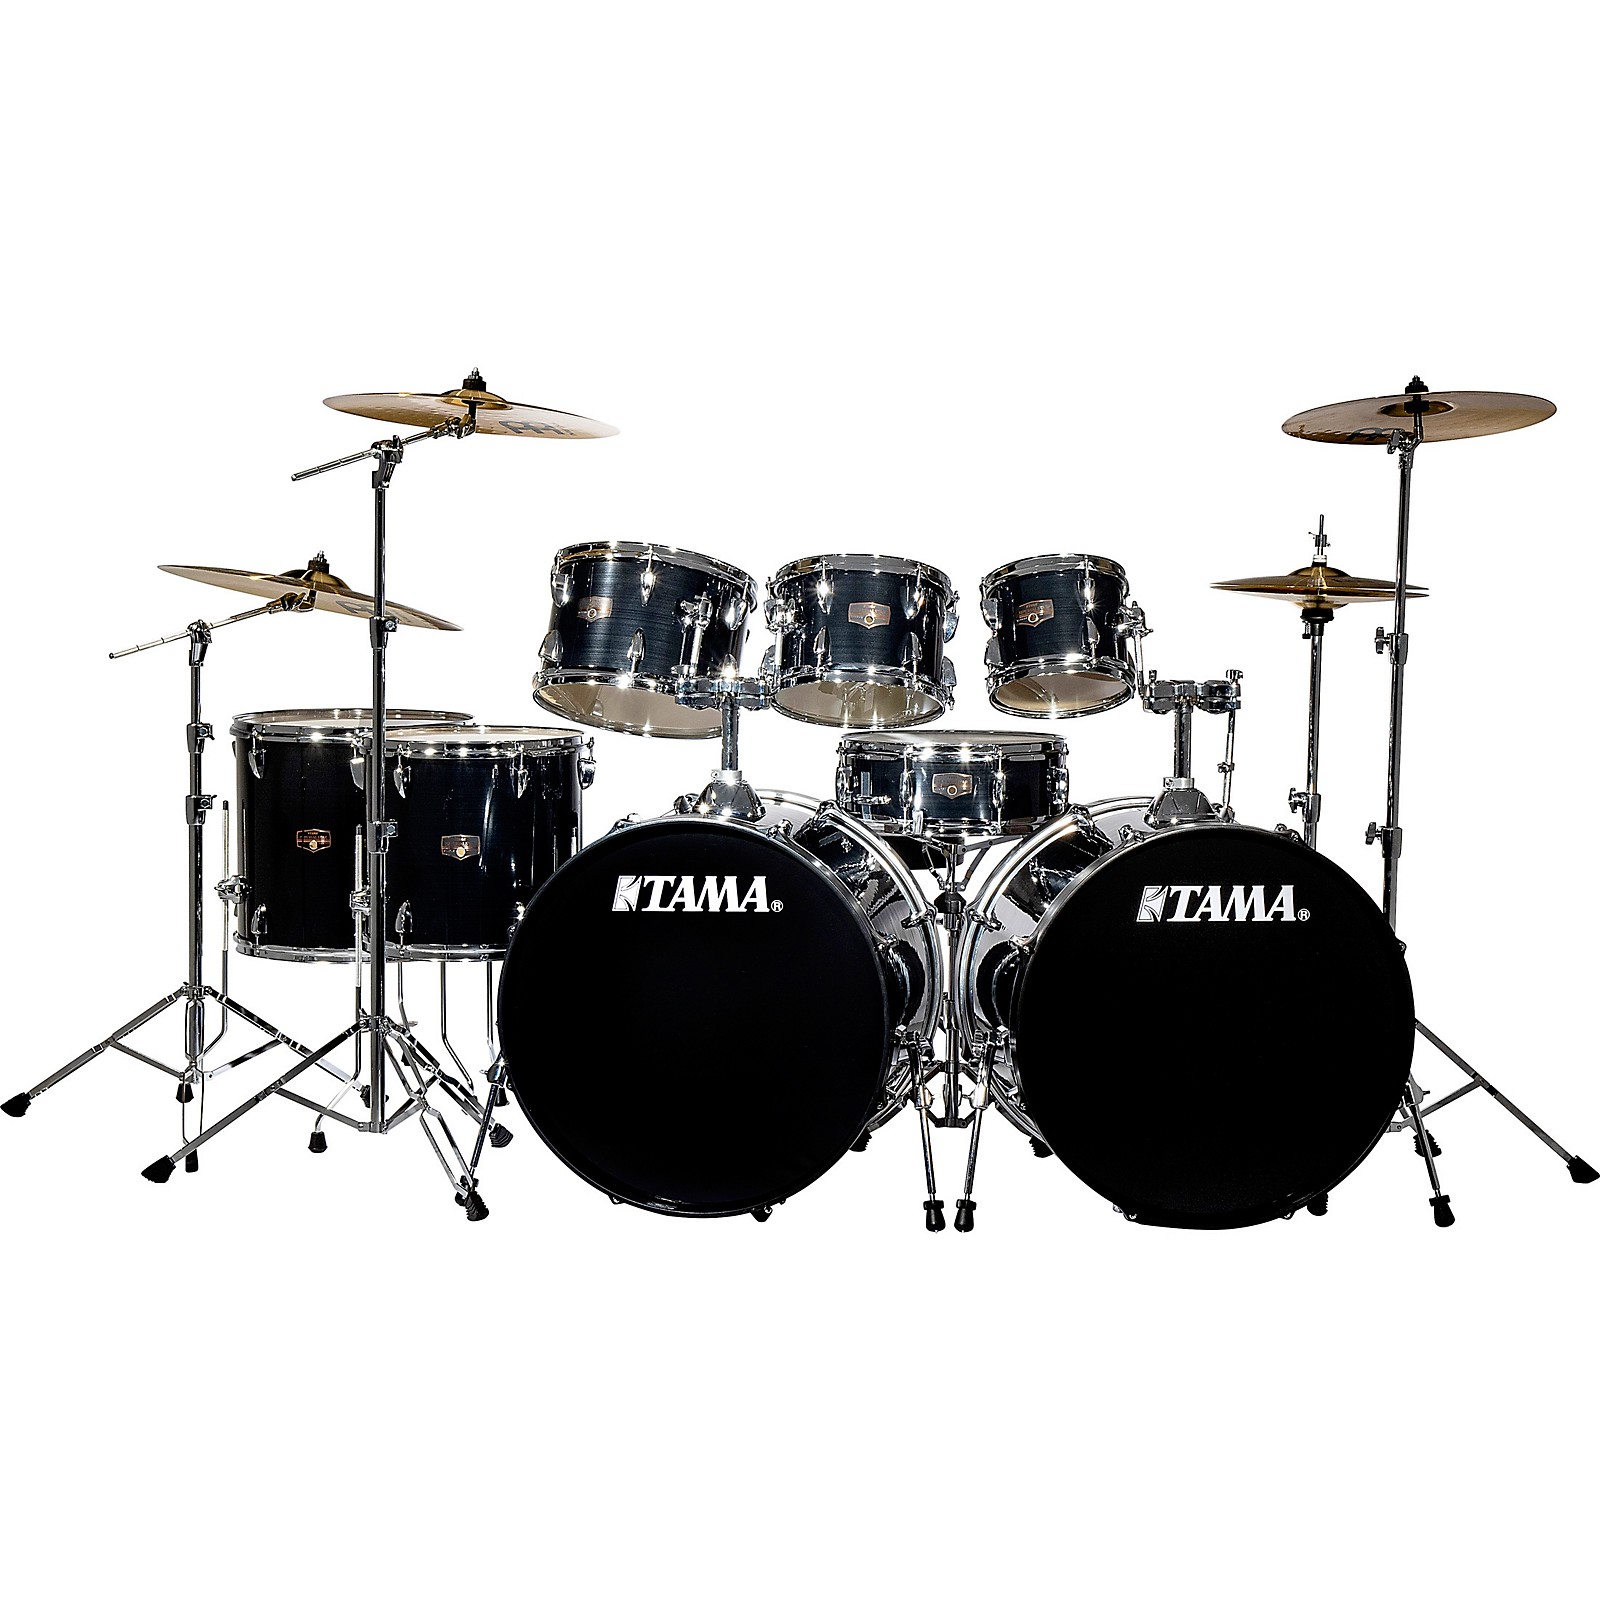 8bit drummer set